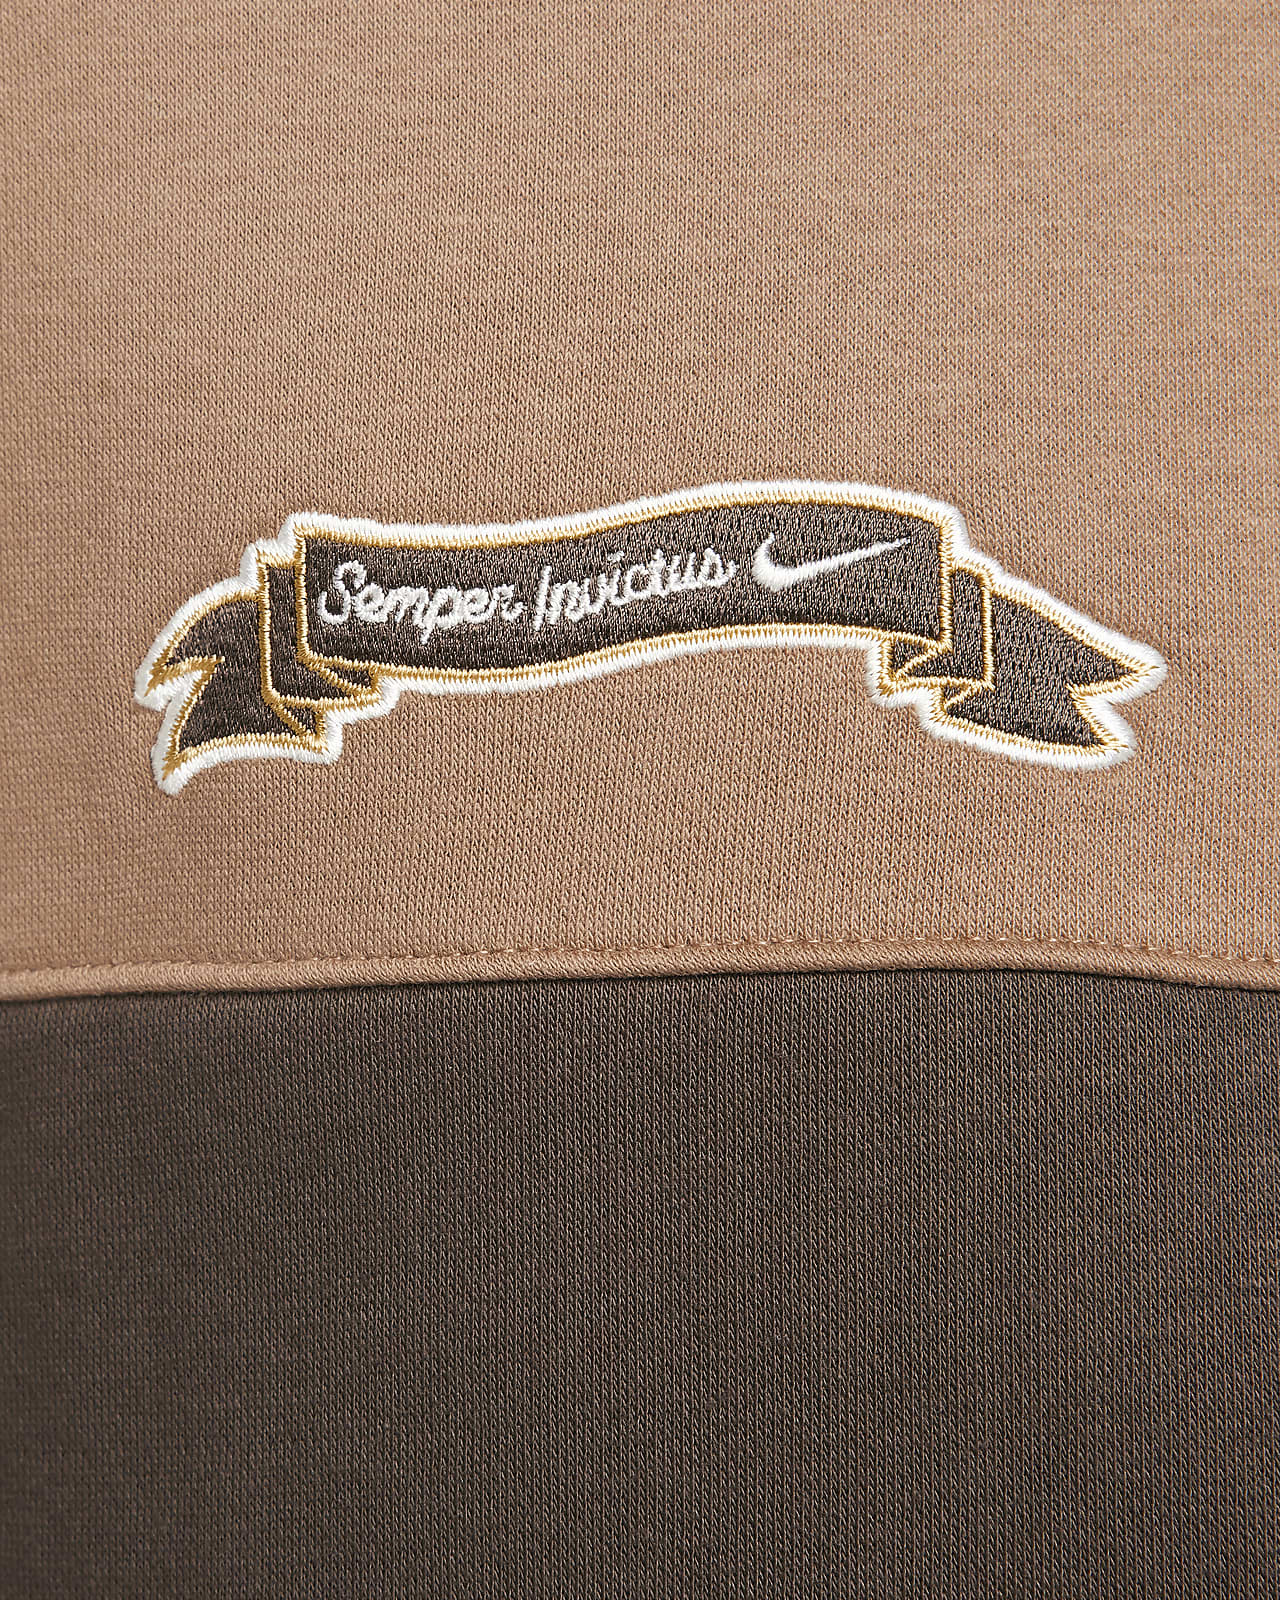 Sweat capuche Nike pour homme Club Fleece. Zip intégral type veste